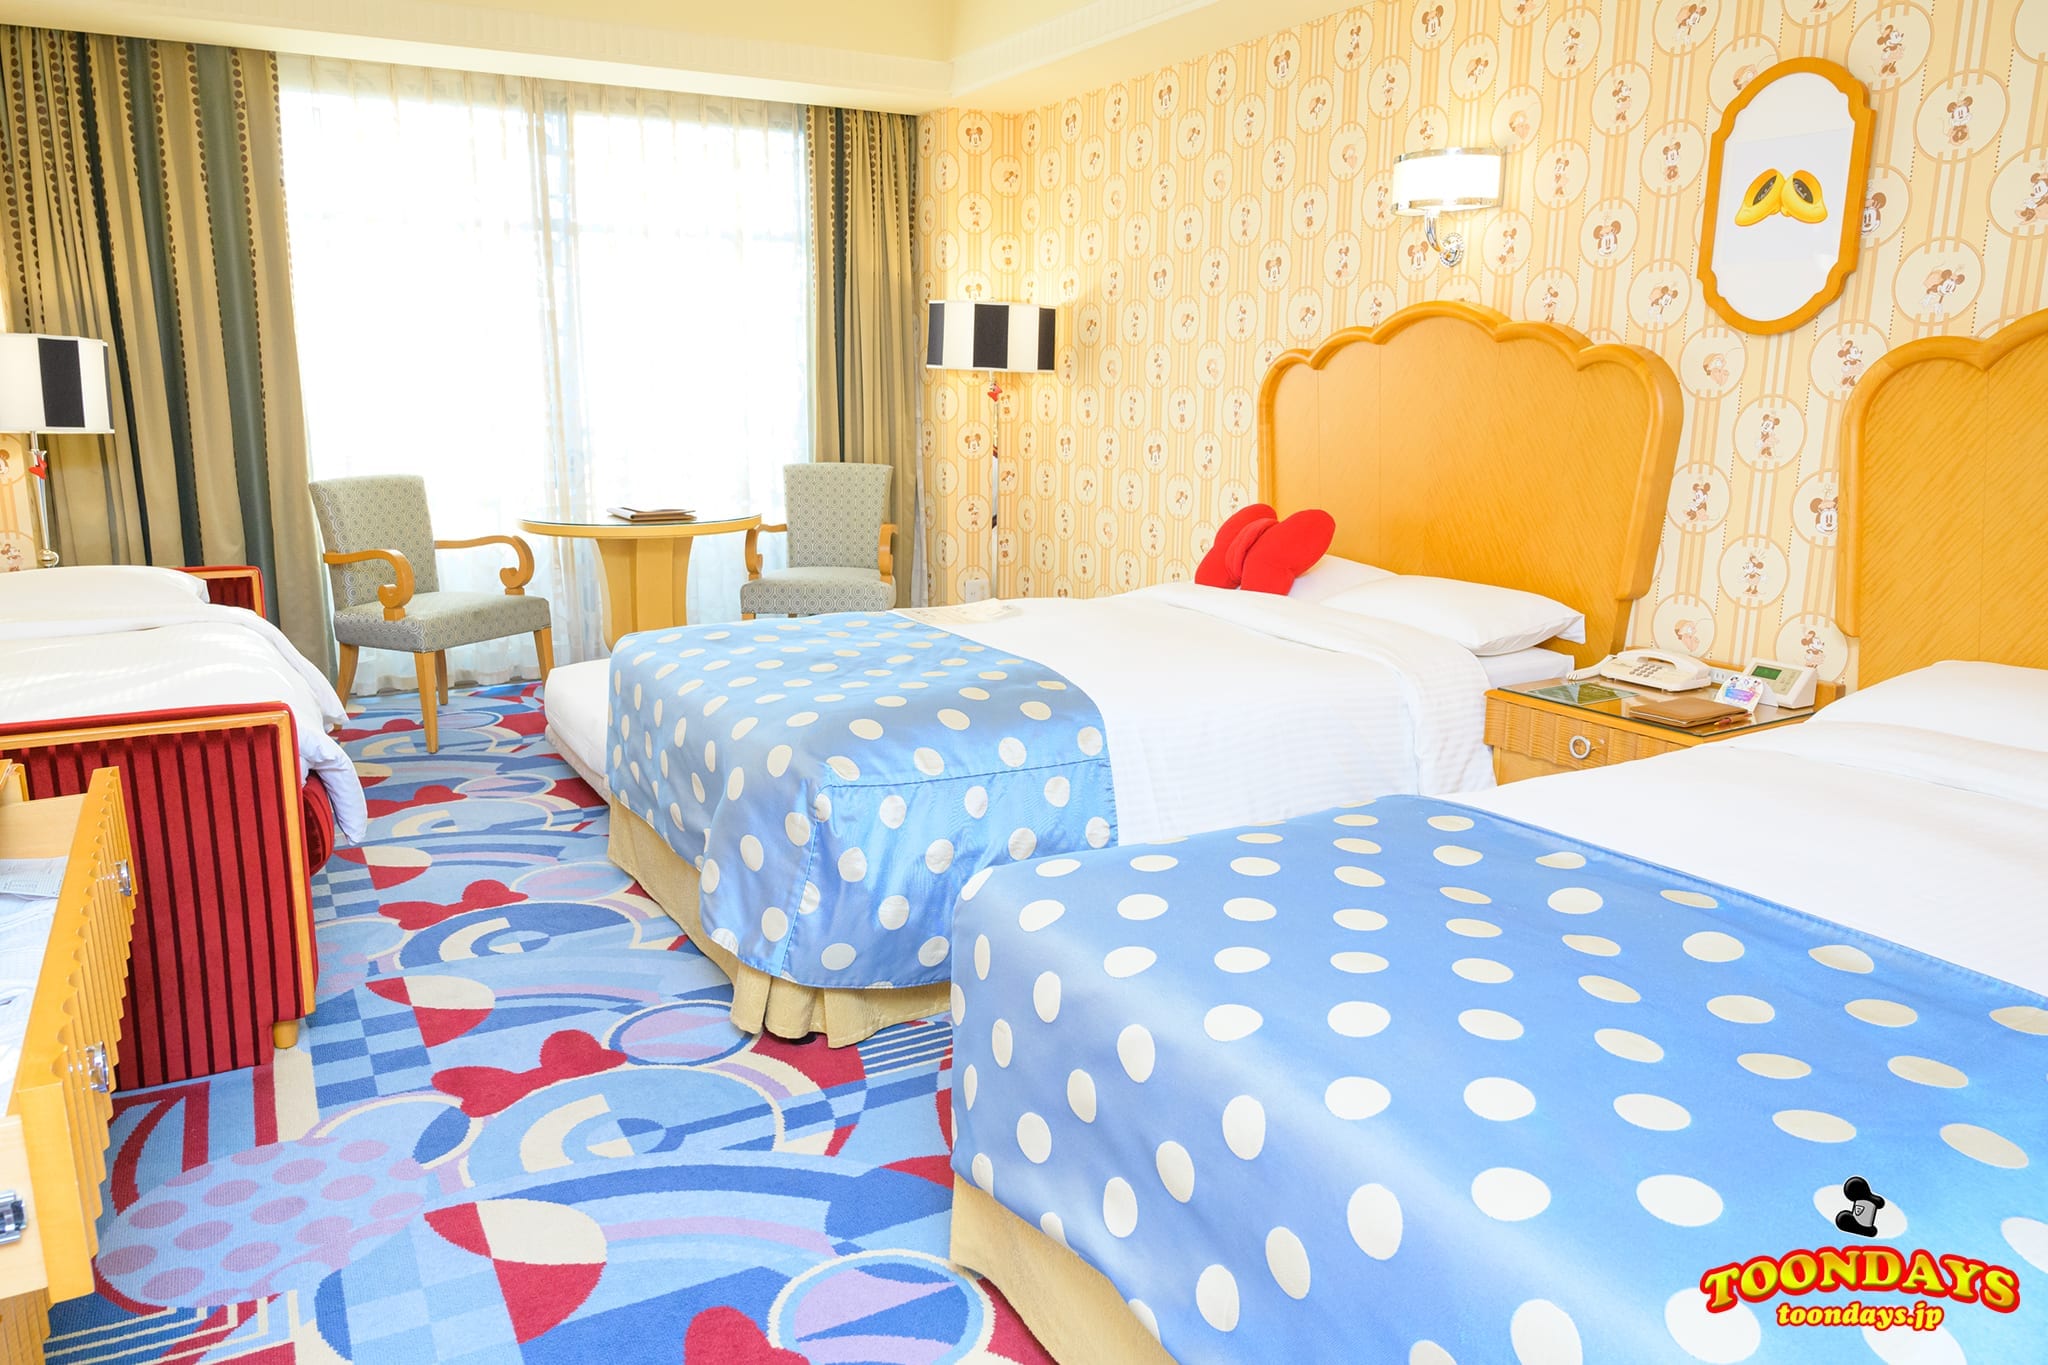 1度は泊まりたい ミニーマウスルーム ディズニーアンバサダーホテルのミニーデザイン客室 ディズニーブログ Toondays